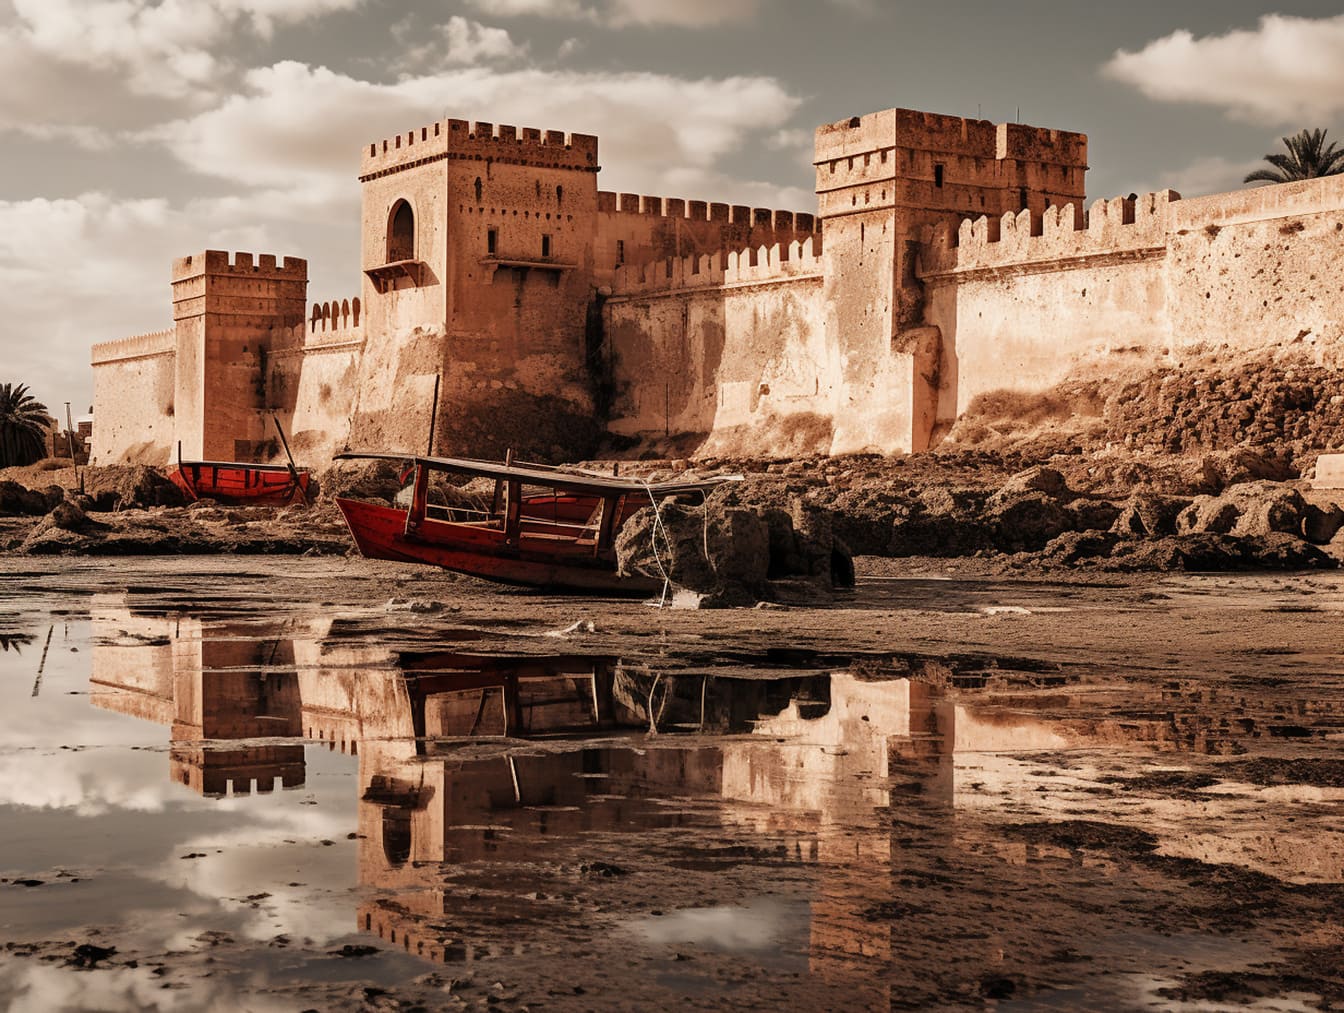 Castillo medieval con una gran muralla y barca en el lecho del río en época de sequía